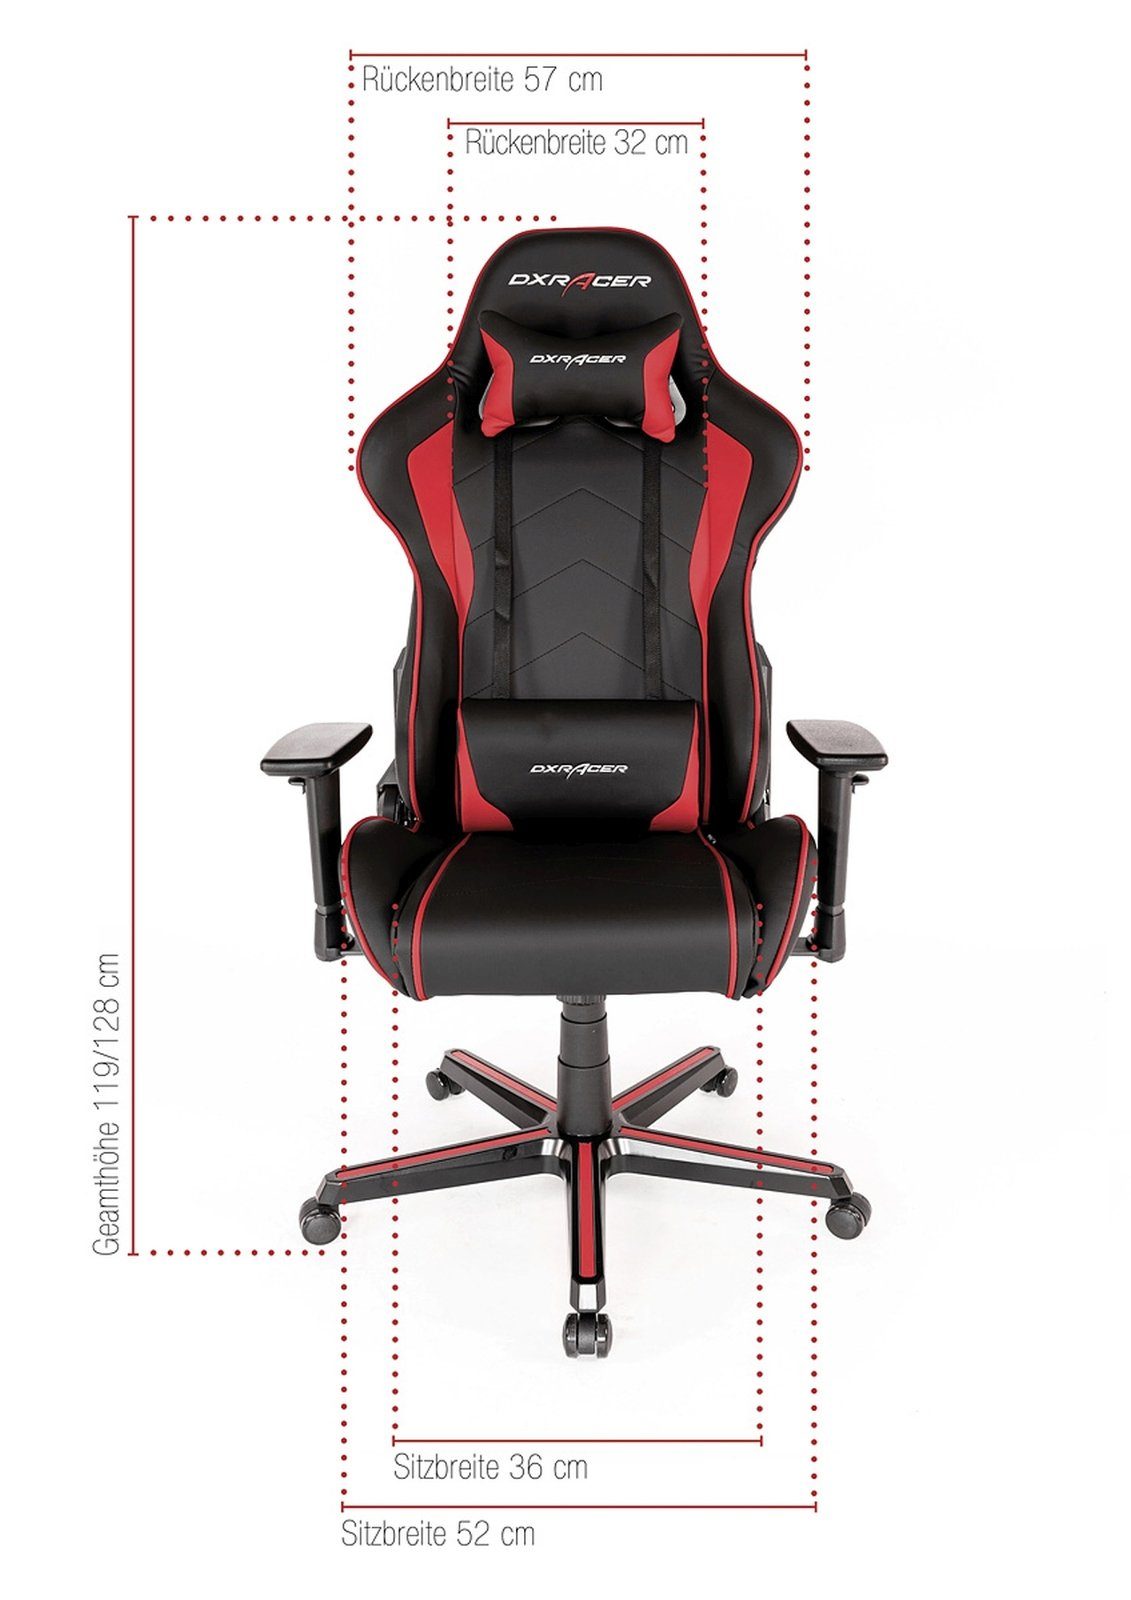 DXRacer Gaming Chair DXRacer F08 in verstellbar Wippfunktion, (Chefsessel schwarz und 3D Armlehnen rot)